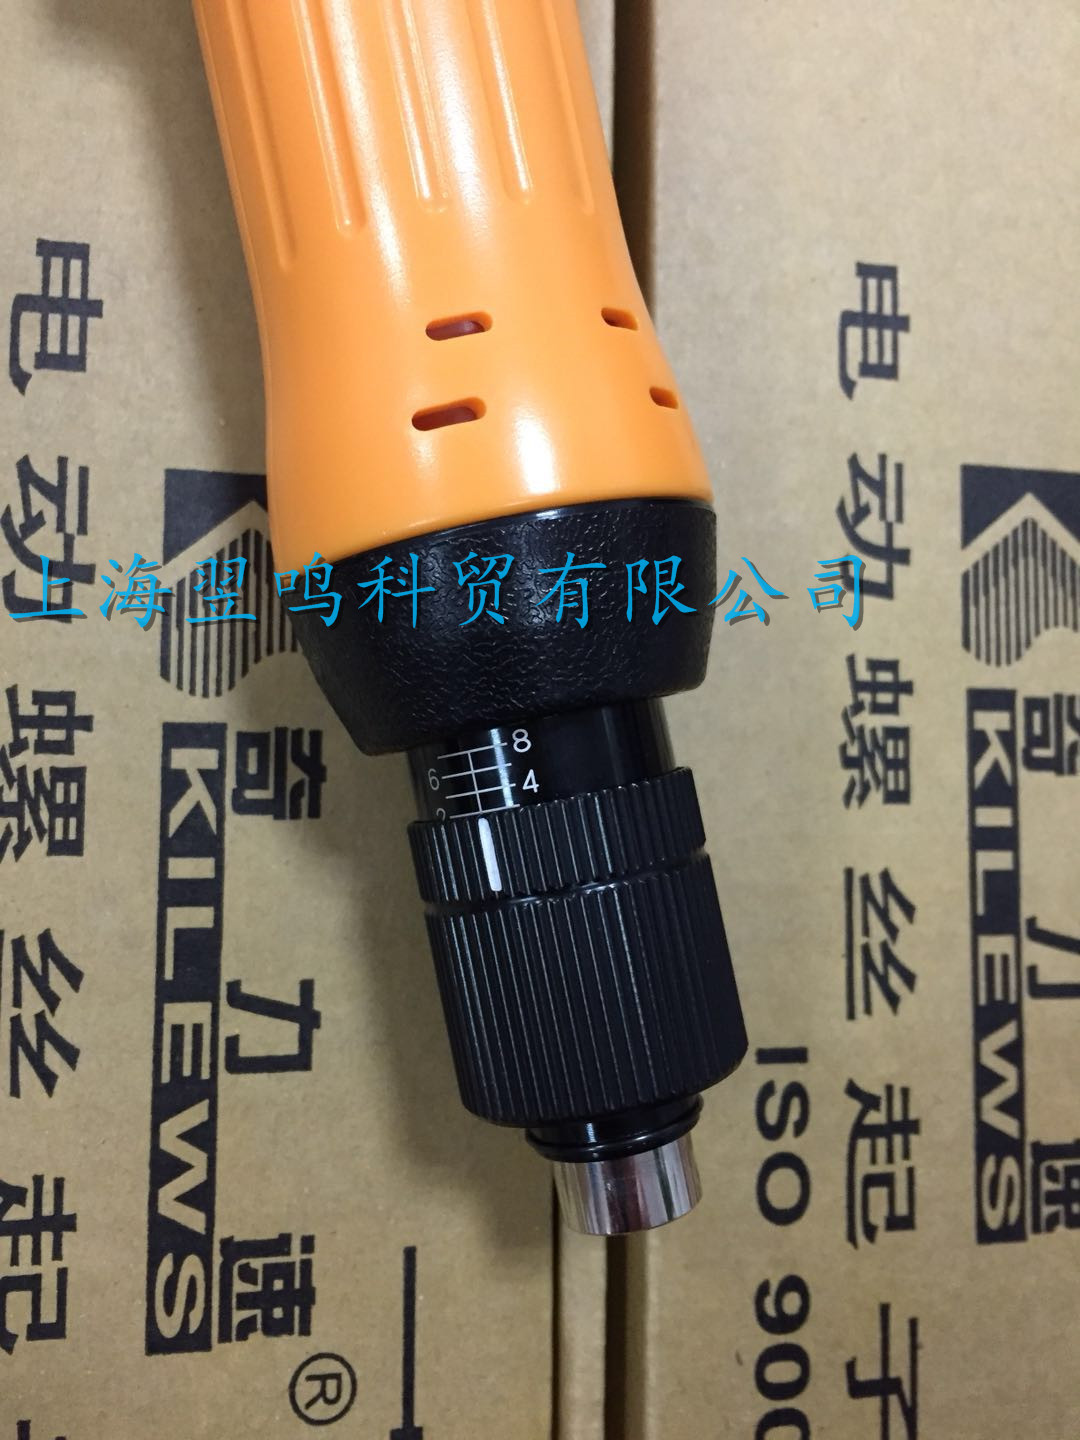 奇力速高扭力AC电动螺丝刀SK-9250LB上海一级代理5